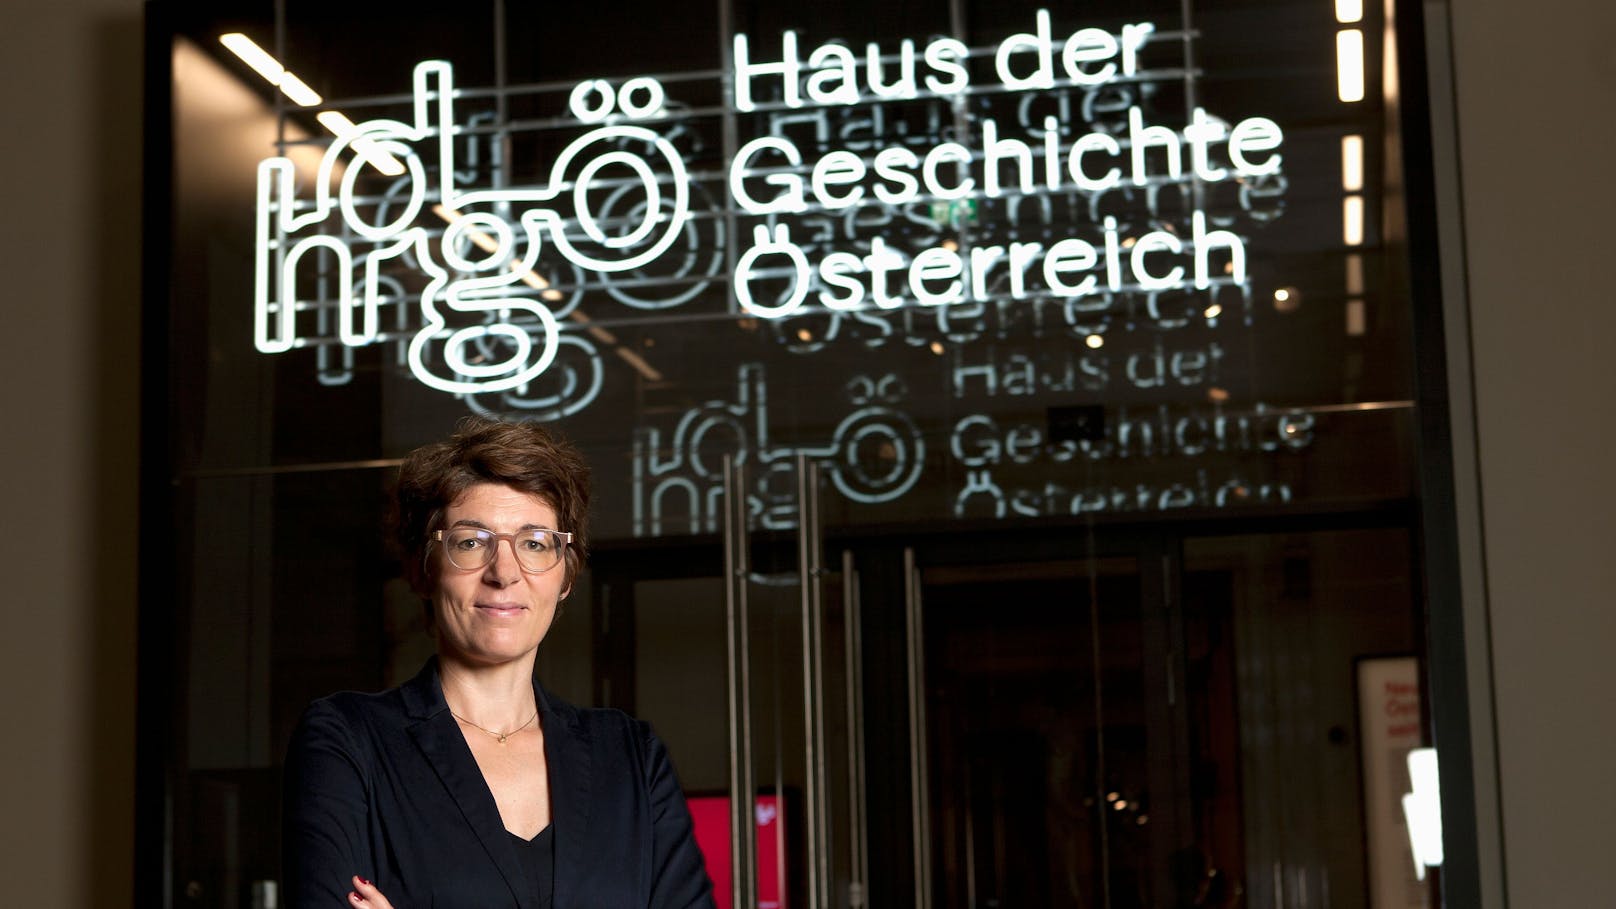 Seit 2017 leitet Dr. Monika Sommer das Haus der Geschichte Österreich. Bald zieht dieses um.